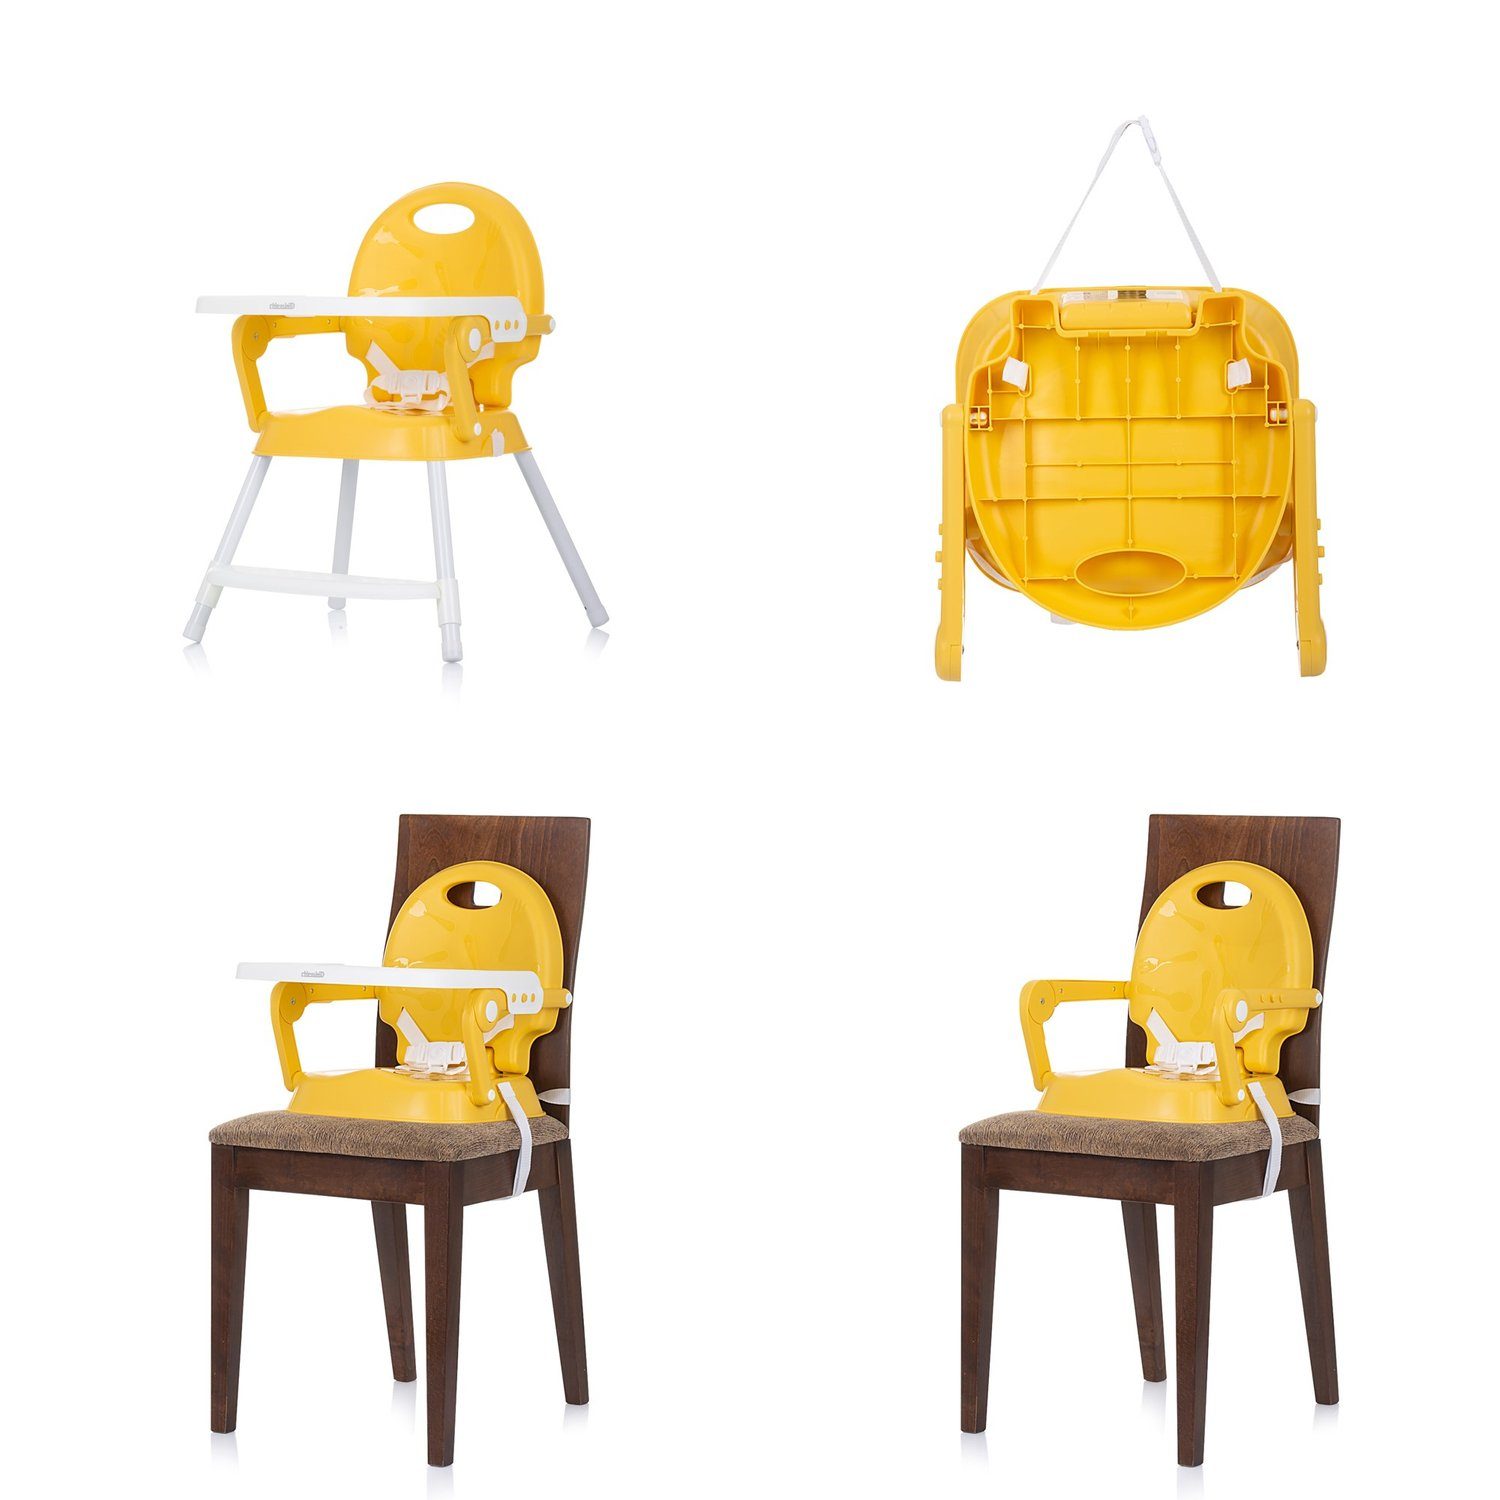 Tablett Chipolino Fußstütze, verstellbar Bonbon, Sitzerhöhung, 3 in gelb Hochstuhl 1 Hochstuhl